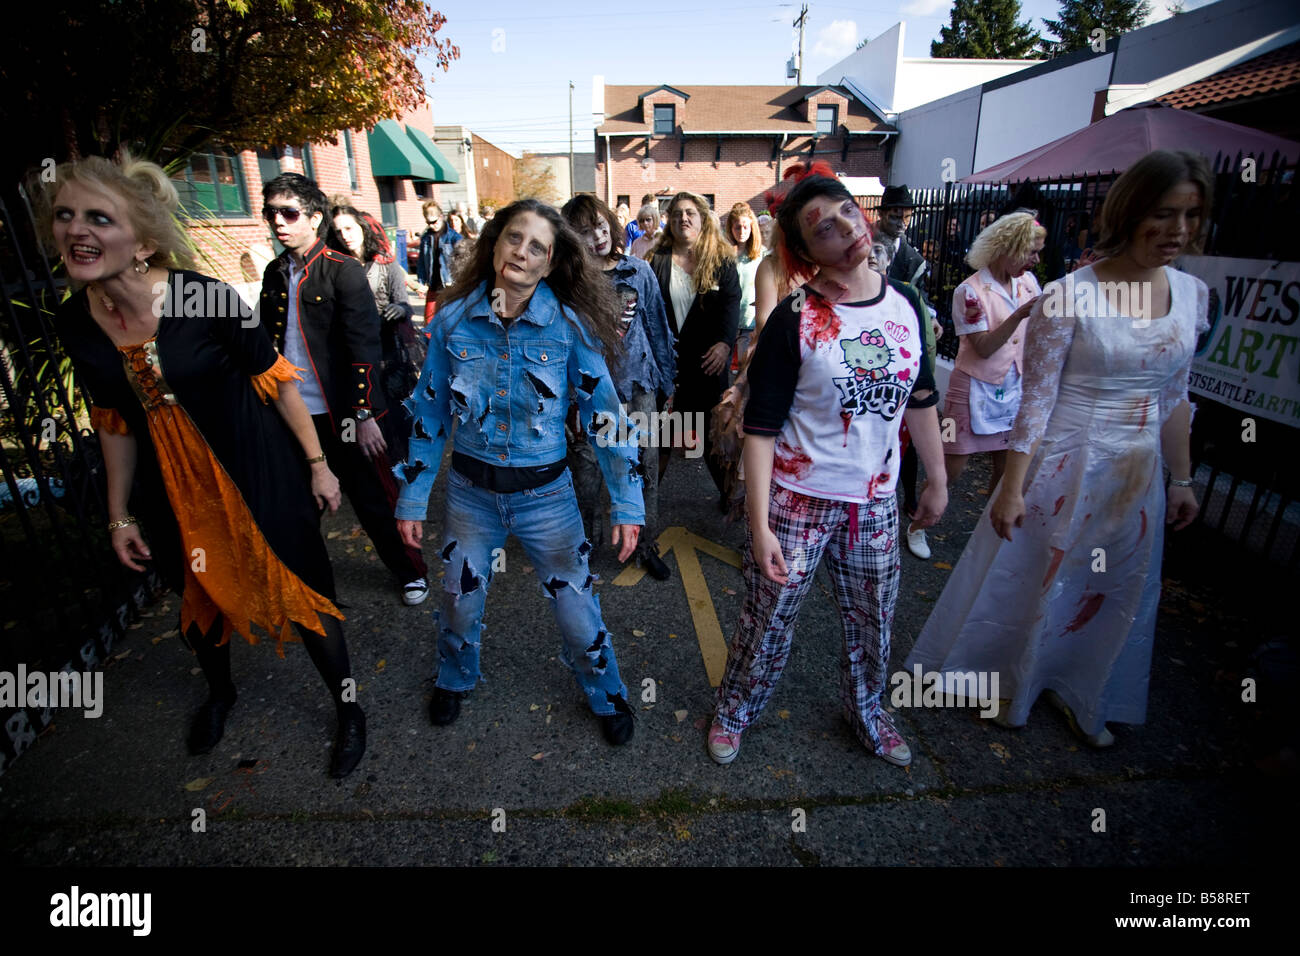 Am 25. Jahrestag des Jacksons Thriller video sammeln Seattle Zombies im Occidental Park um eine Thriller-Tanz-Veranstaltung. Stockfoto